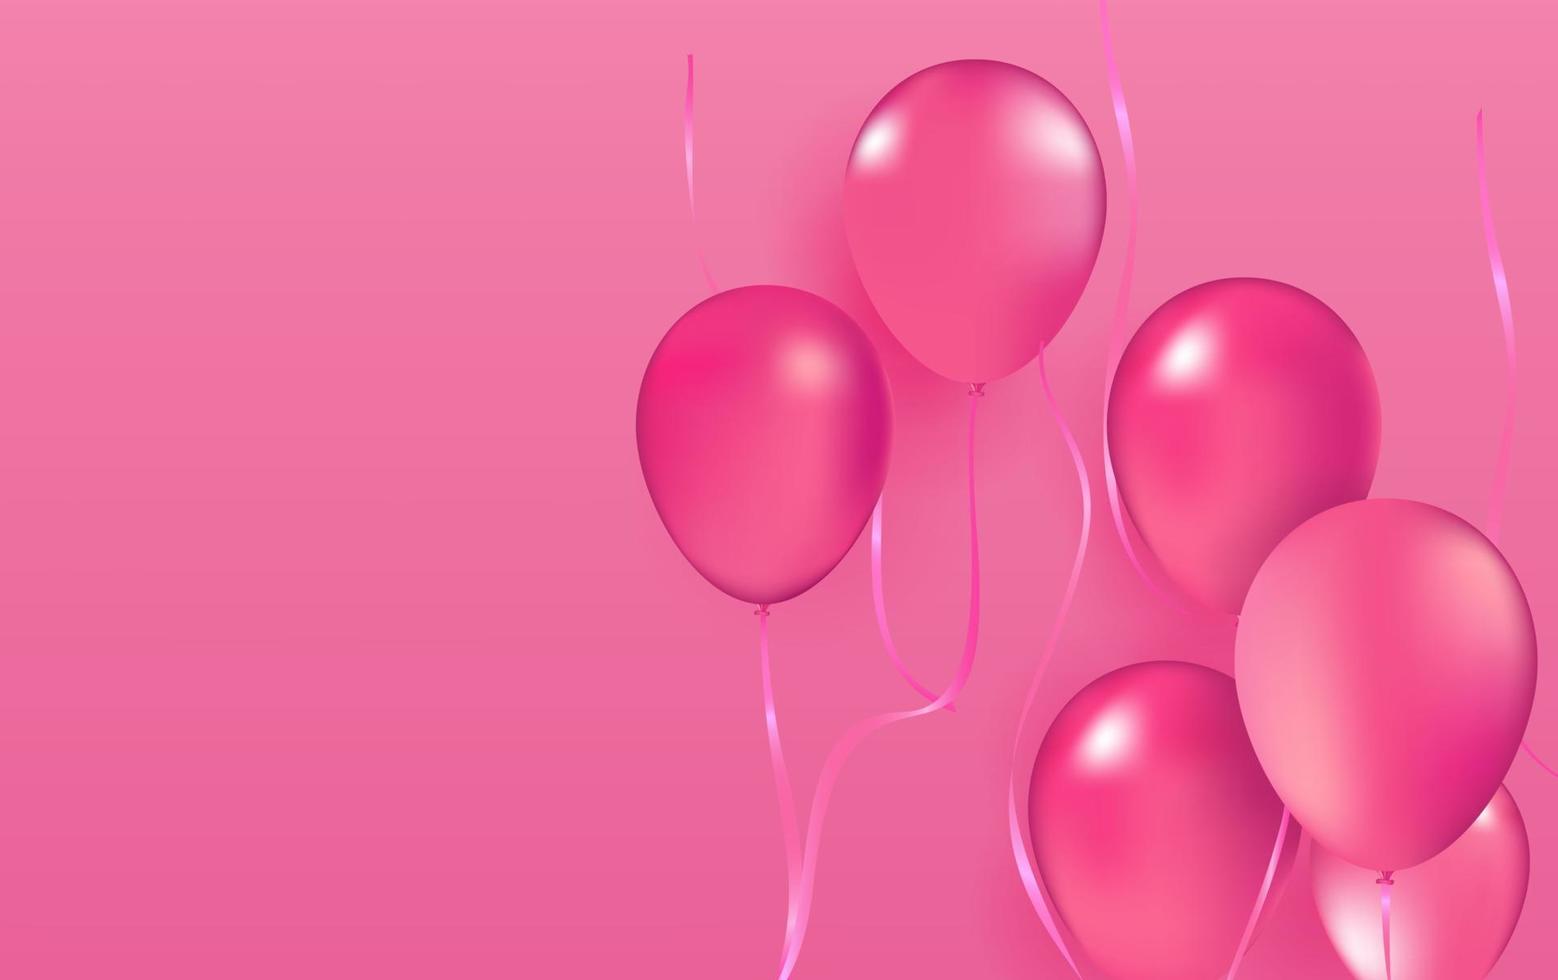 realista vector festa balões rosa romântico amor elegância dia dos namorados 14 de fevereiro decoração aniversário celebração elegância cartão design elemento isolado no fundo rosa.